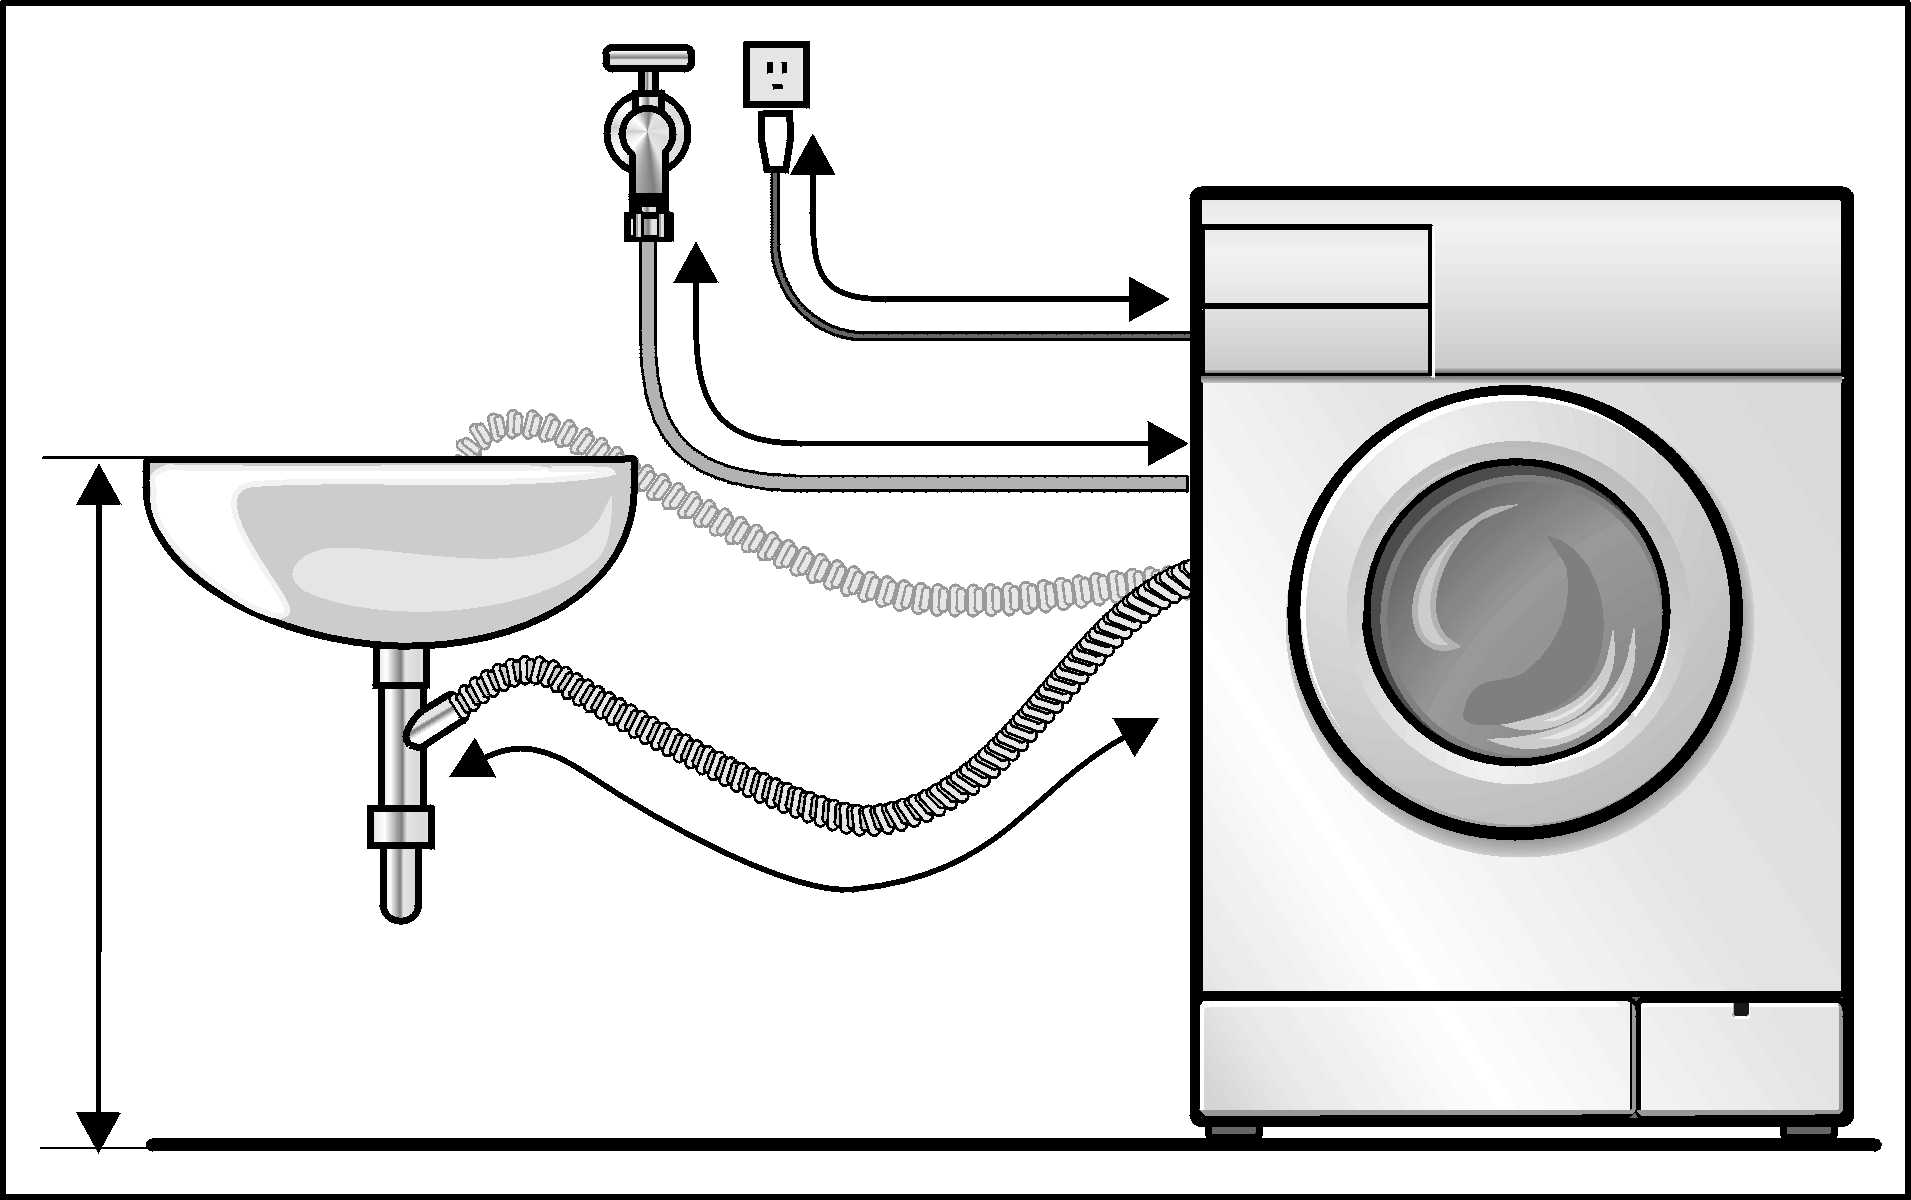 Как подключить стиральную машину самостоятельно - пошаговая инструкция, советы и рекомендации